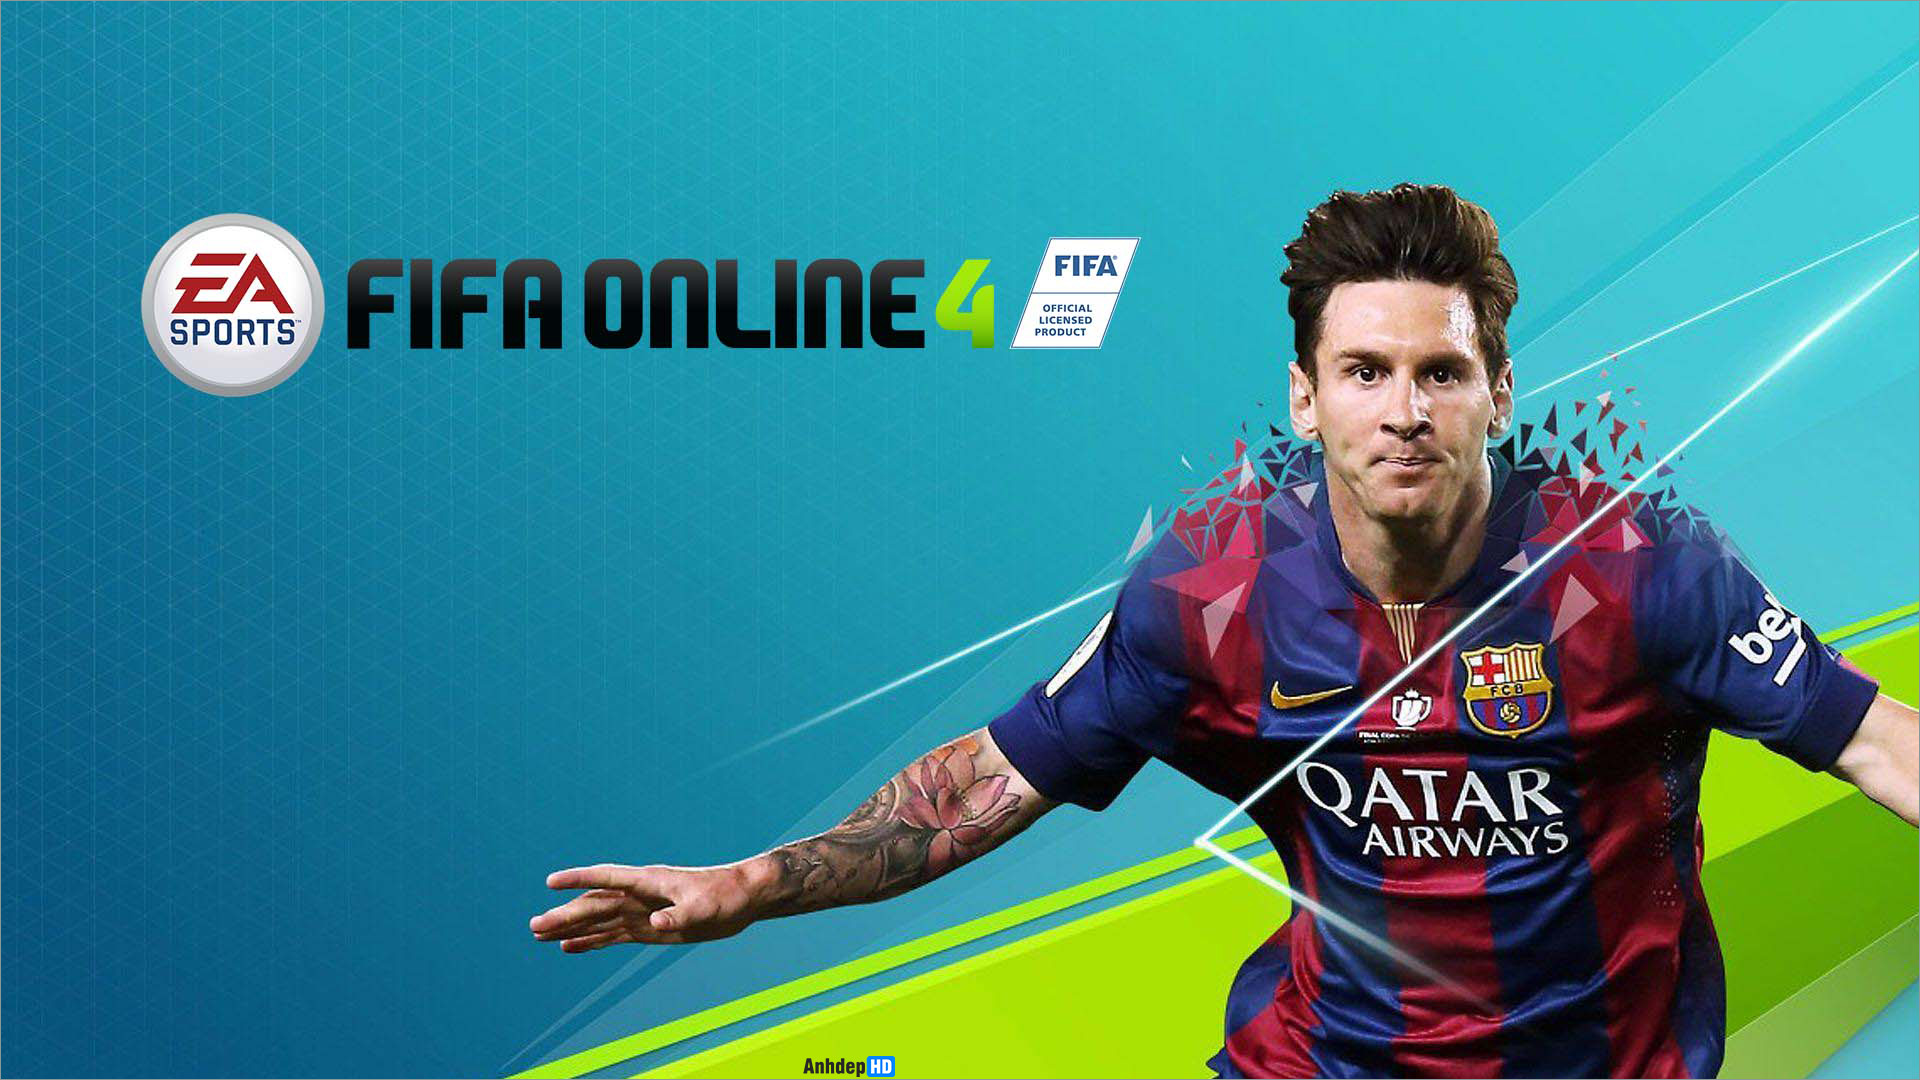 Trong thời đại công nghệ hiện đại, game mobile đang dần trở thành lựa chọn của nhiều người chơi. Và nếu bạn là một trong những fan của FIFA, thì Fifa Mobile Online chắc chắn là tựa game không nên bỏ lỡ. Hãy xem ngay những hình ảnh về Fifa Mobile Online để khám phá về trò chơi này nhé.